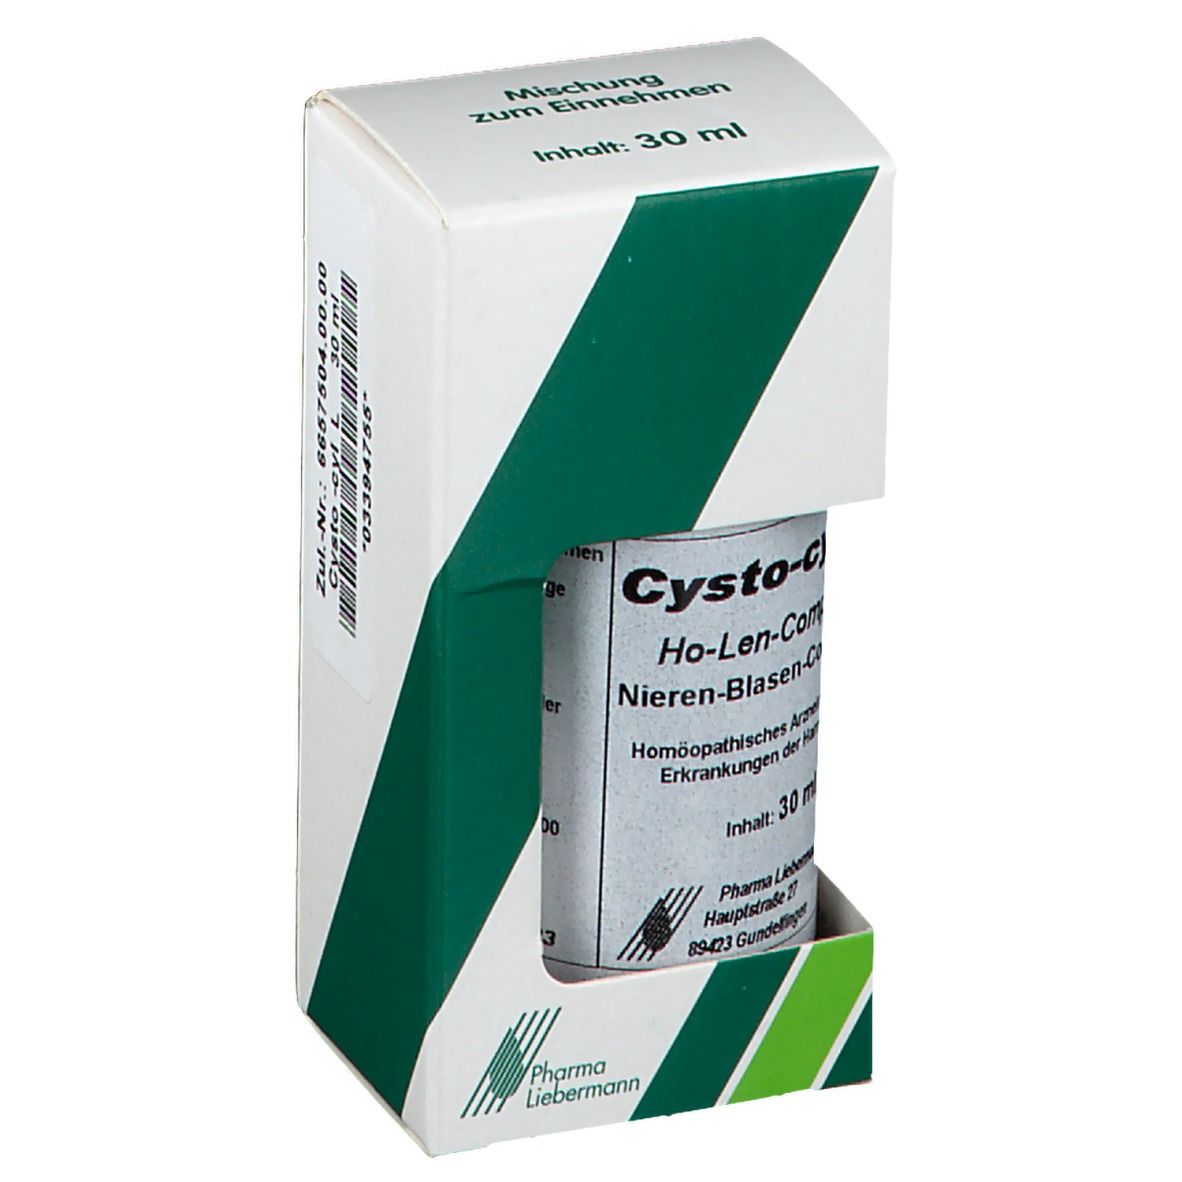 Cysto-cyl® L Nieren-Blasen-Complex